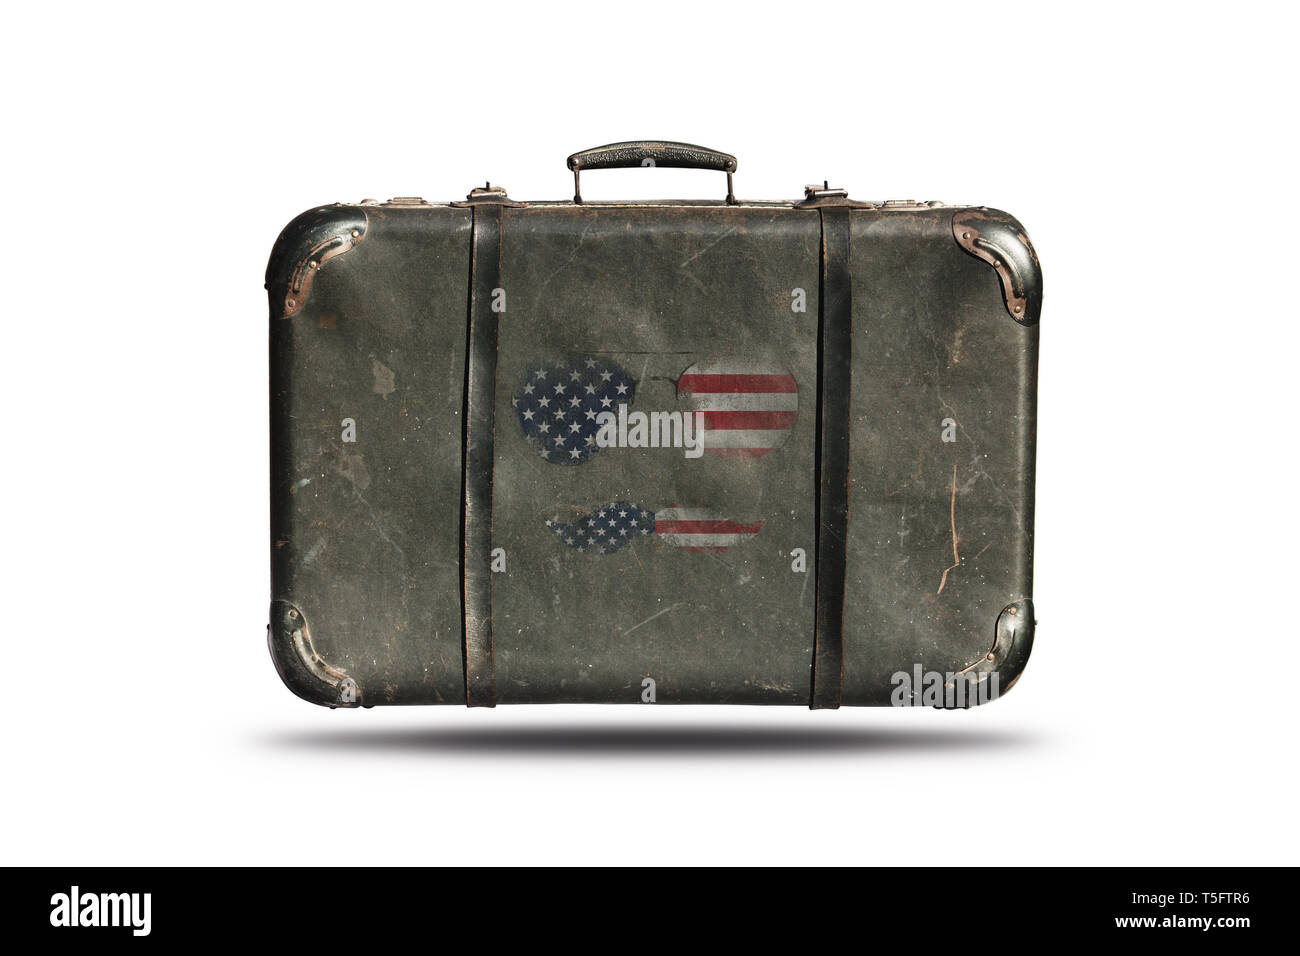 Travel Vintage Leder Koffer mit amerikanischer Flagge in Form von  Sonnenbrillen und Schnurrbärte. Glücklich 4. Juli, Tag der Unabhängigkeit  Vereinigte Staaten von Amerika Stockfotografie - Alamy